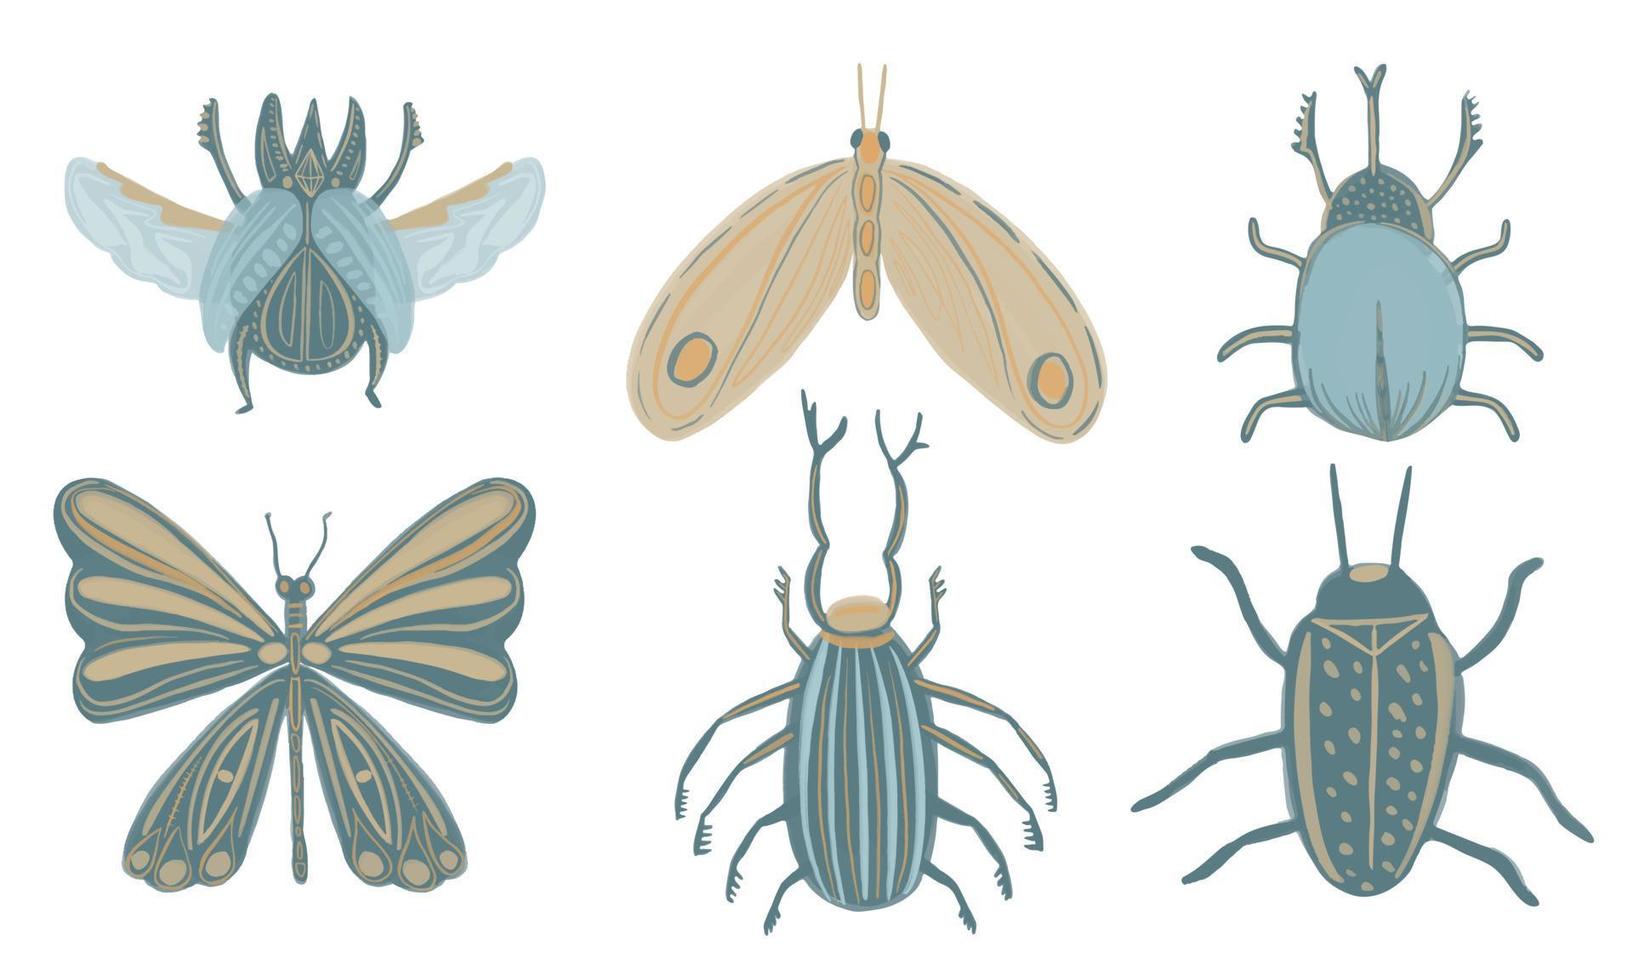 vektorsammlung von handgezeichneten stilisierten magischen käfern und schmetterlingen im boho-stil. sammlung fliegender mythischer insekten skarabäus, hirschkäfer. Himmelskäfer mit Schädeltod. vektor